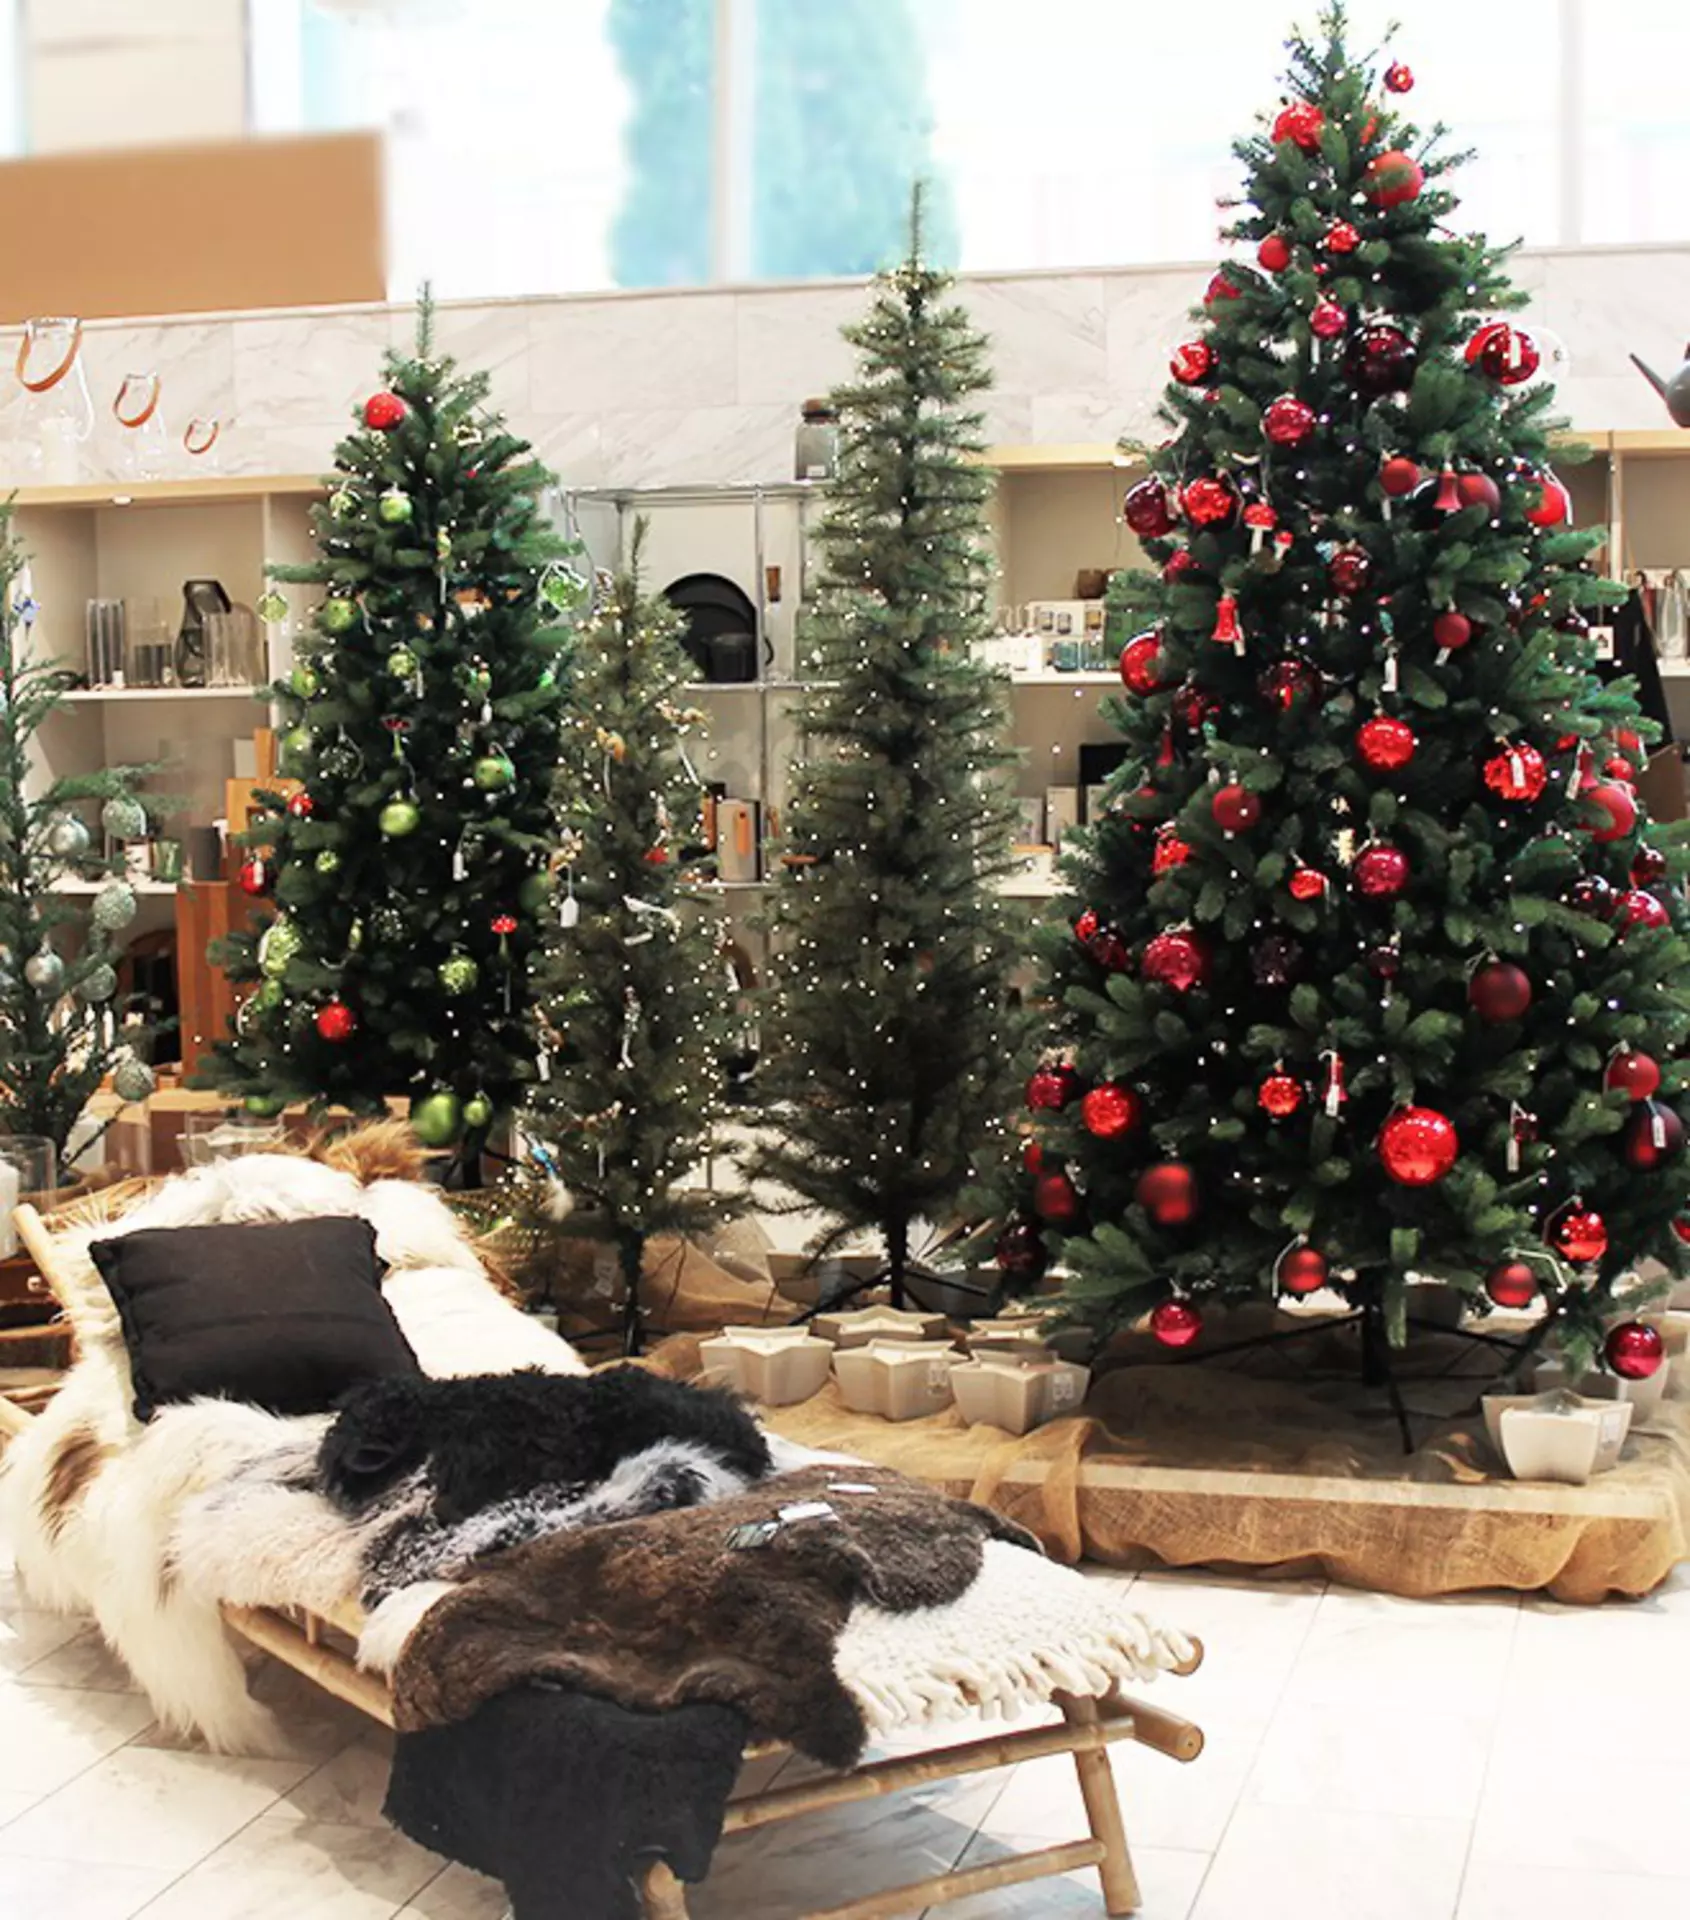 Festlich geschmückte Christbäume und kuschelige Felle - willkommen im Winter-Weihnachtswald